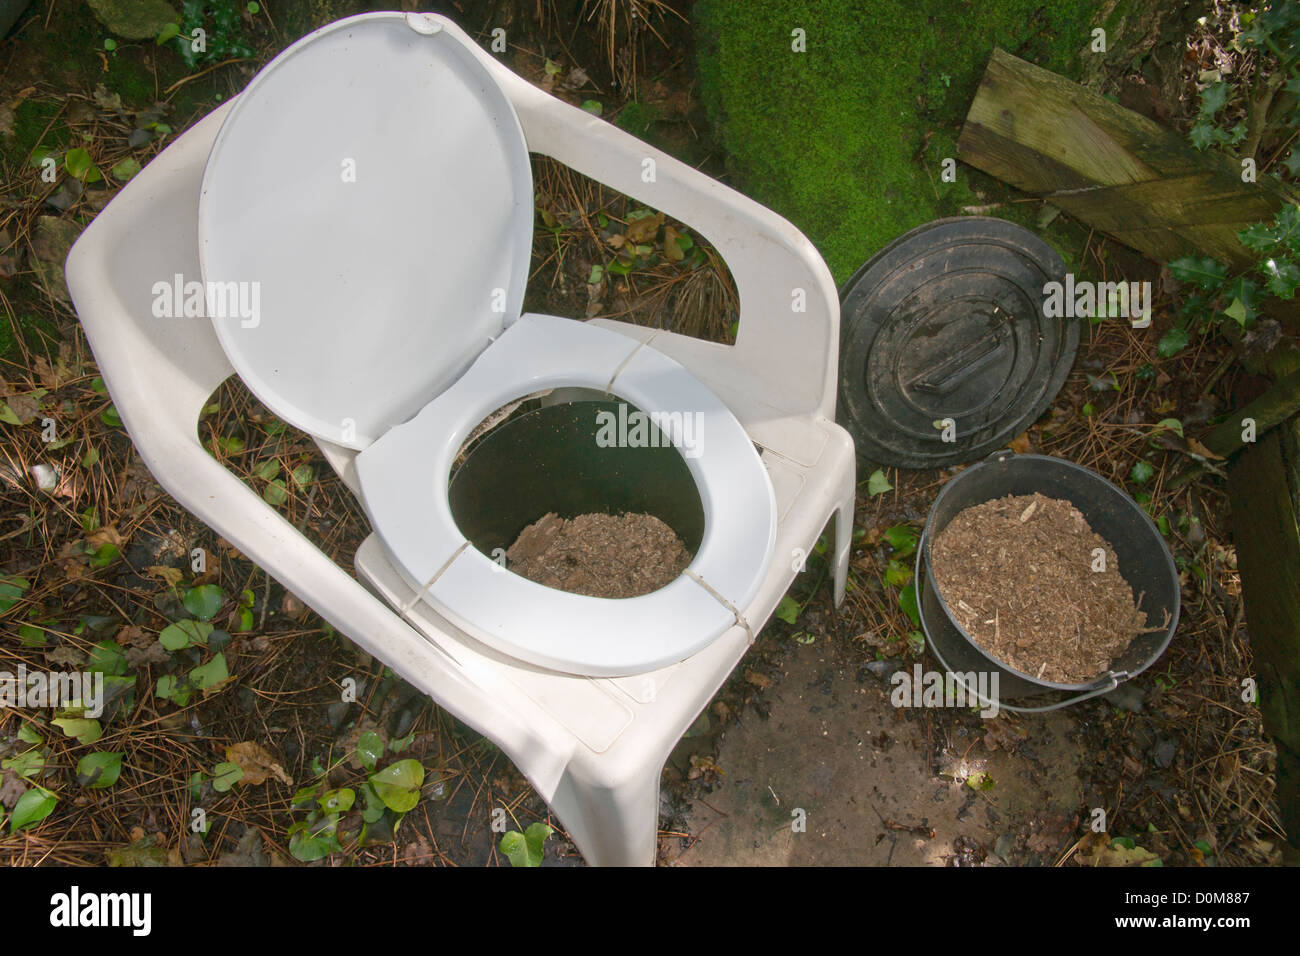 Működés lehetséges megjegyzés Elérhető dry toilet system Feltűnő ...